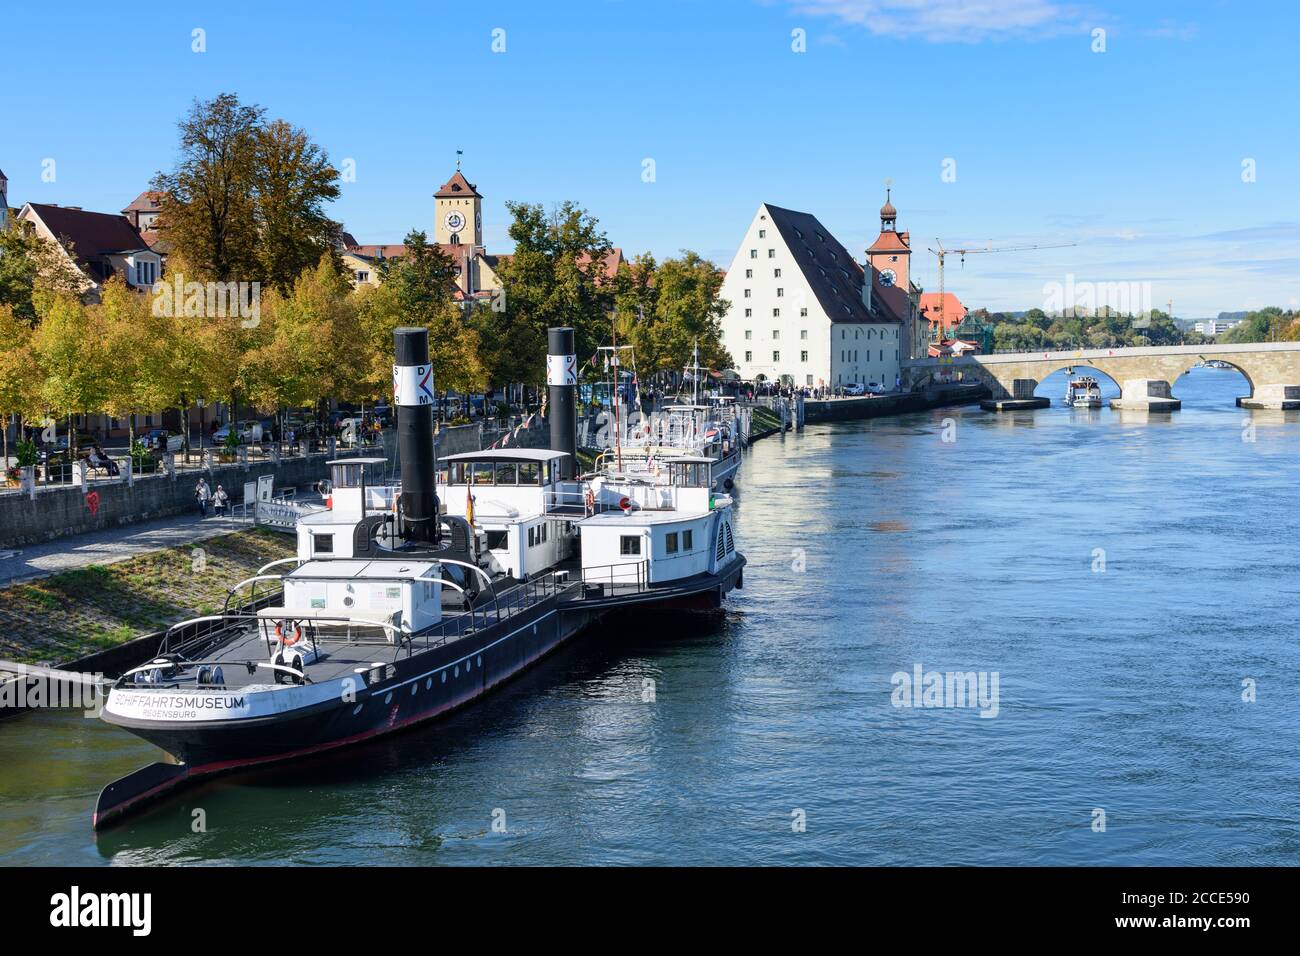 Ratisbonne, rivière Donau (Danube), Steinerne Brücke (pont de pierre), navire musée Ruthof / Ersekcsanad dans le Haut-Palatinat, Bavière, Allemagne Banque D'Images